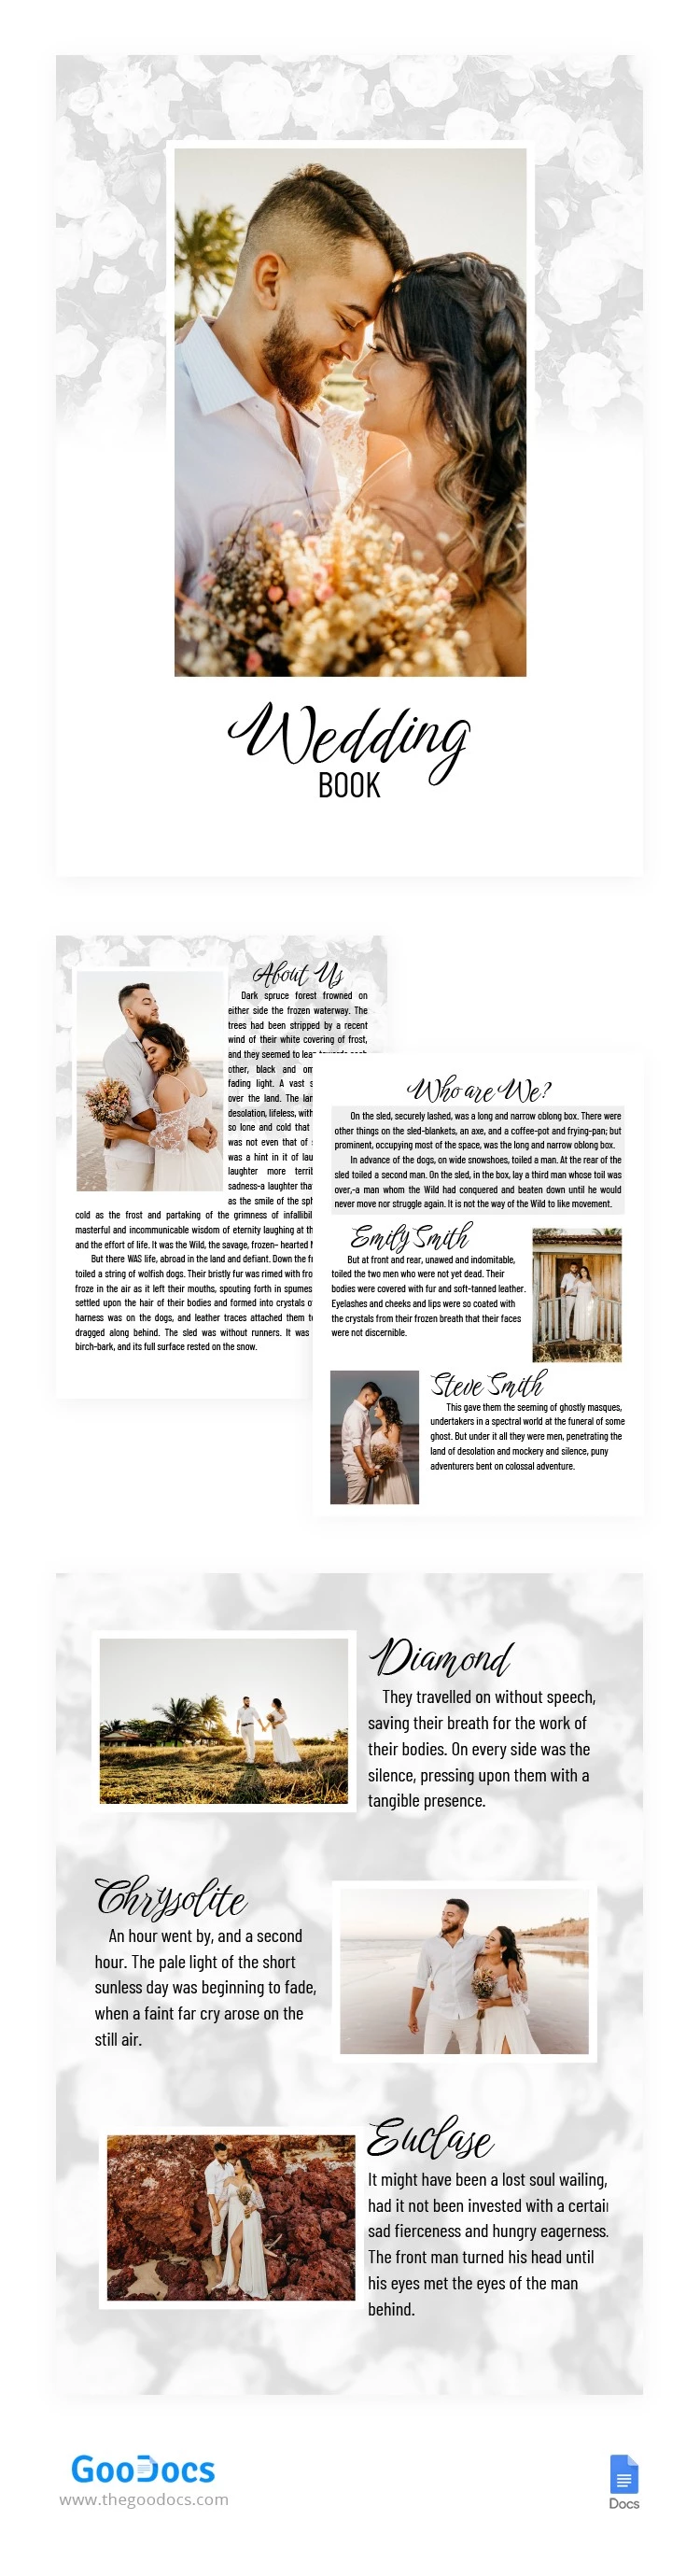 Livre de mariage floral - free Google Docs Template - 10064683